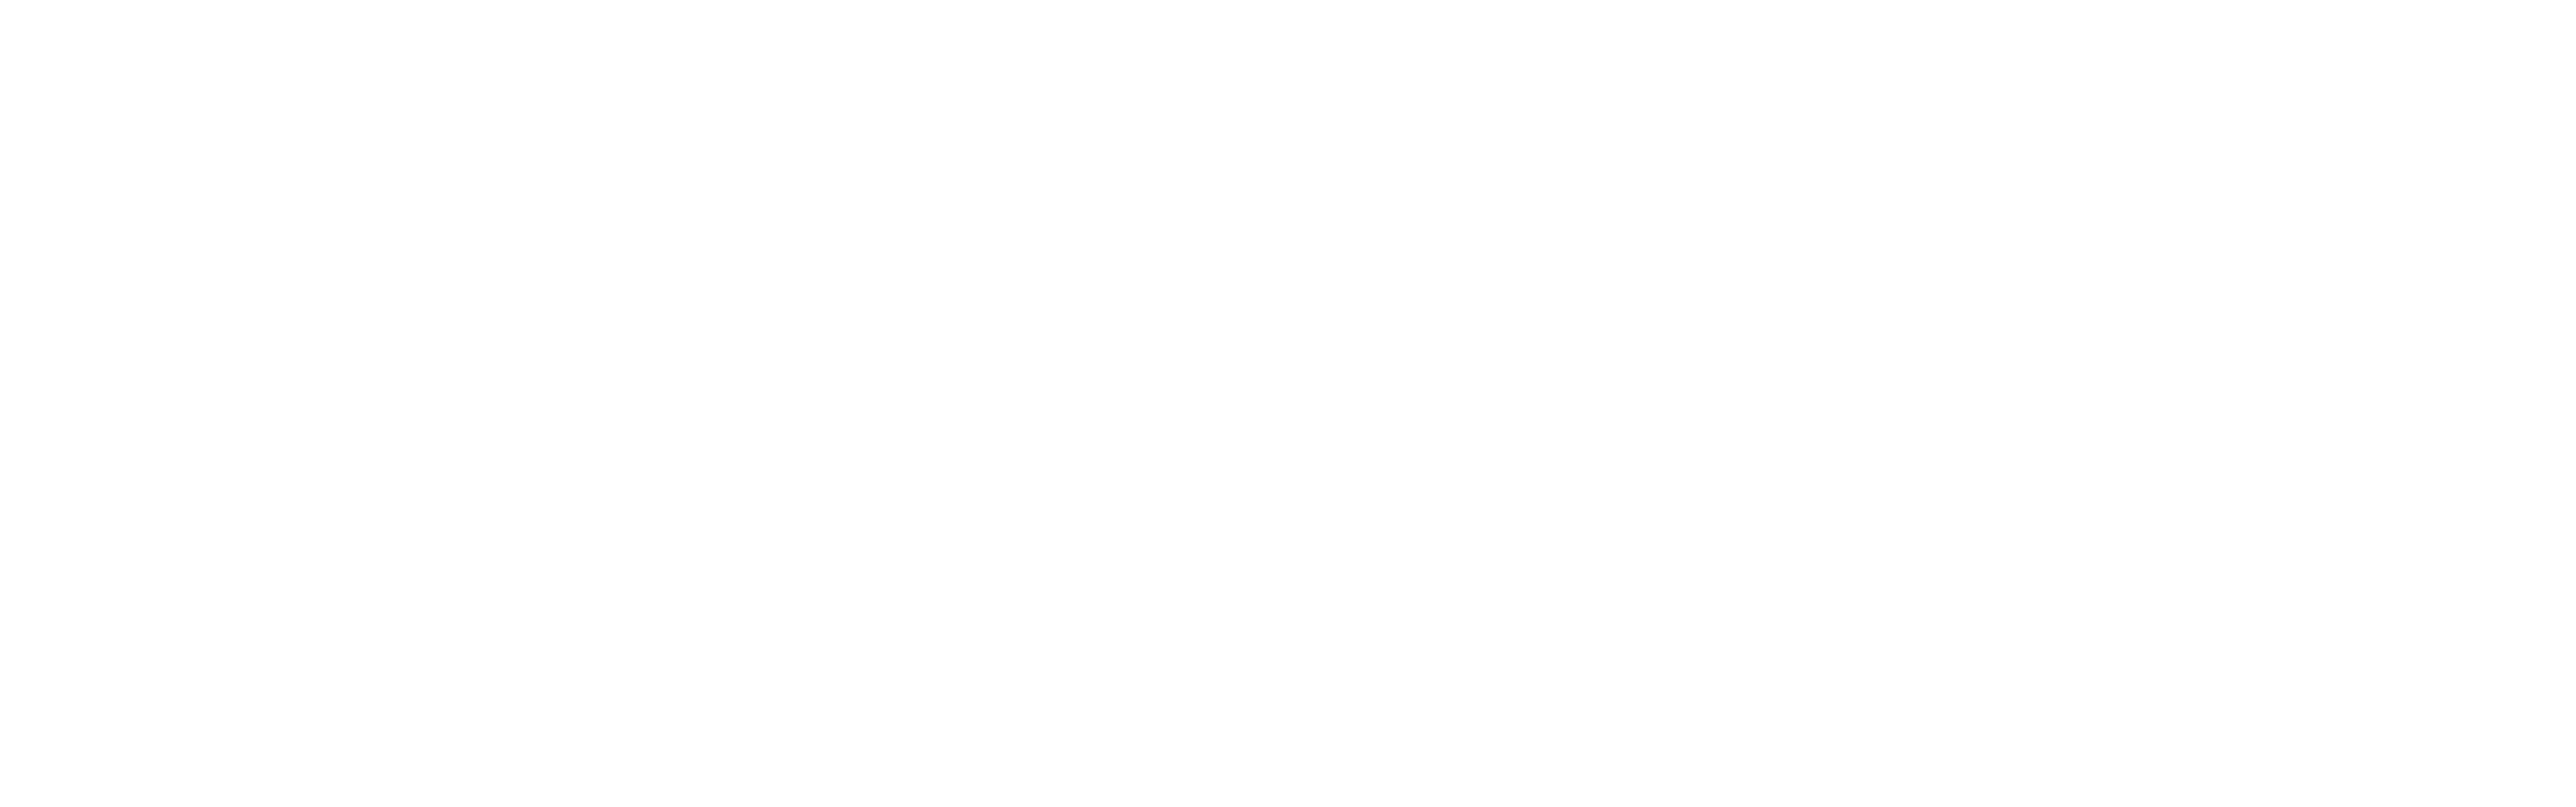 ozz-logo Кухня ГРАНАТ МЕТАЛЛИК на заказ. Кухни под заказ во Владивостоке